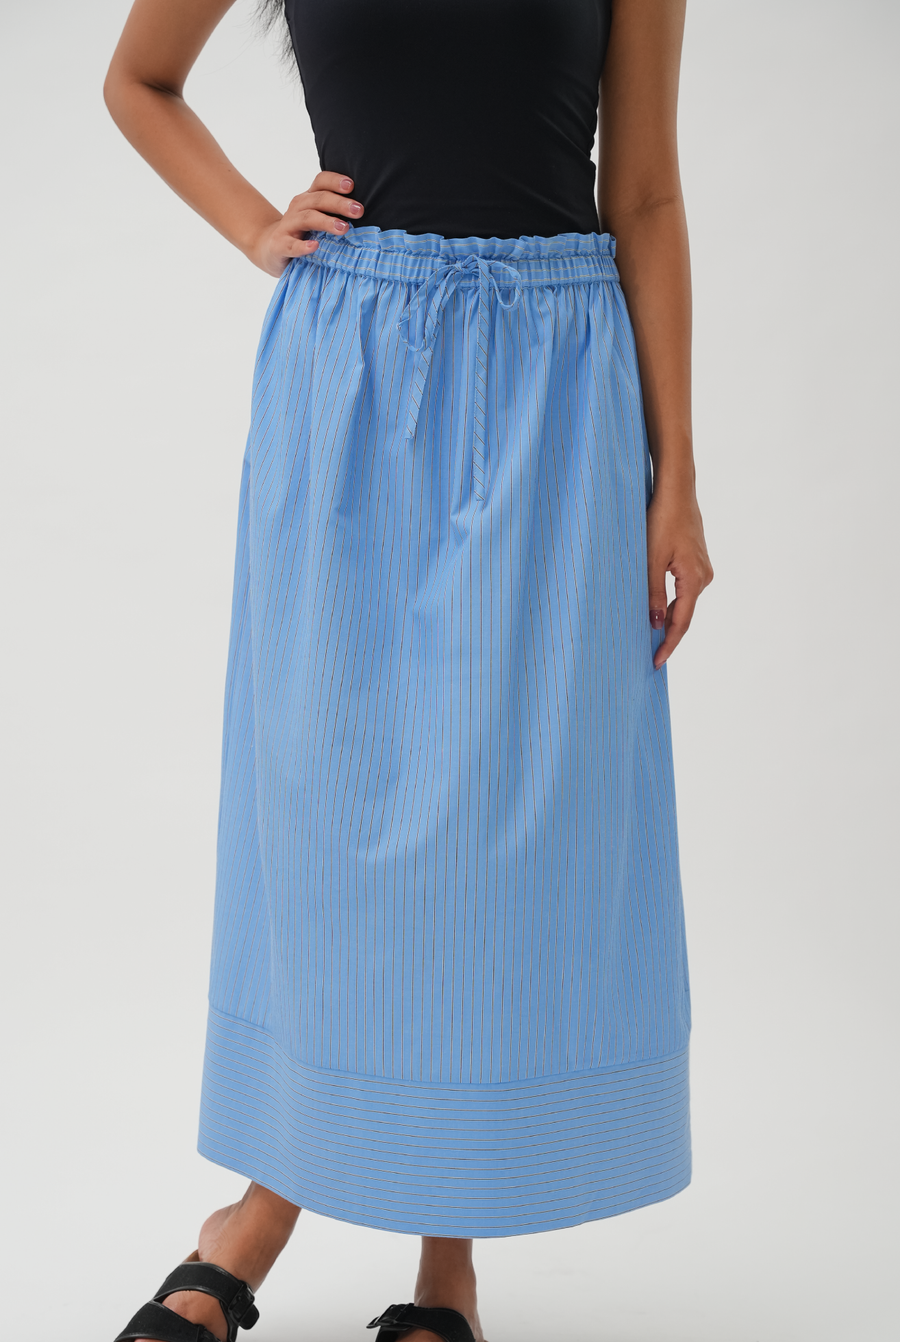 Good Time Skirt in Blue Stripe